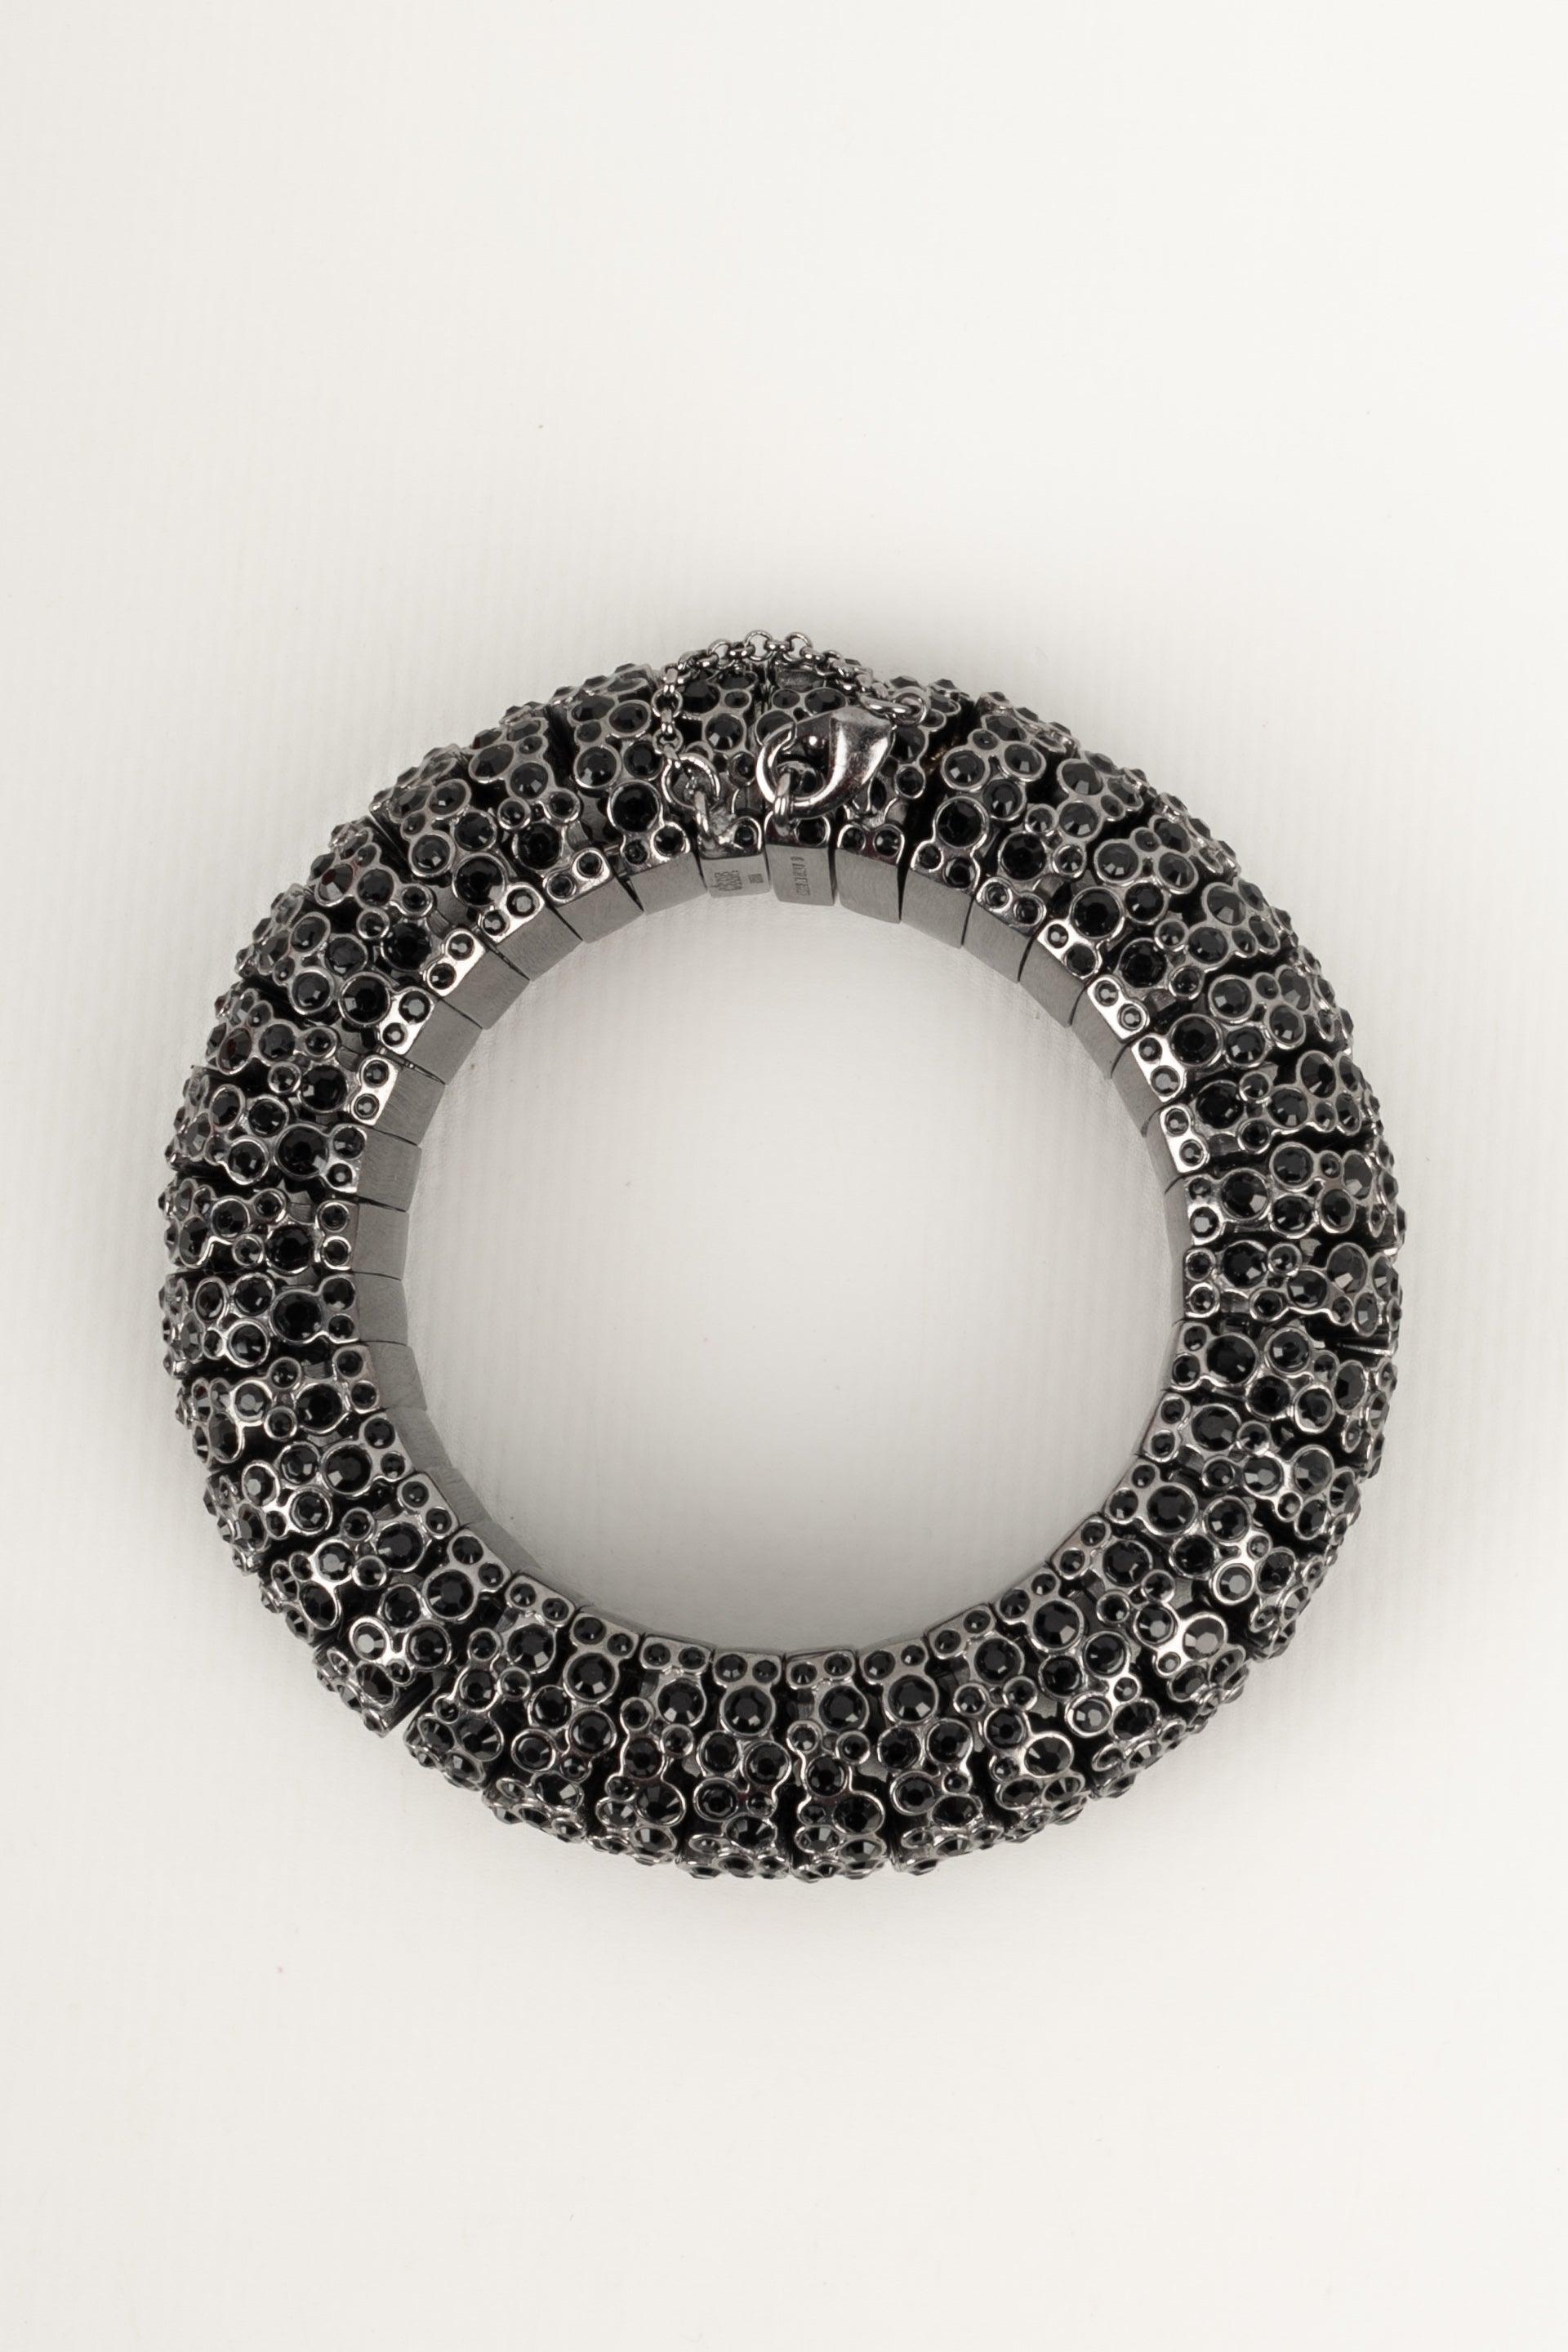 Celine Dark-silvery Metal Bracelet, Ornamented with Black Rhinestones For Sale 3